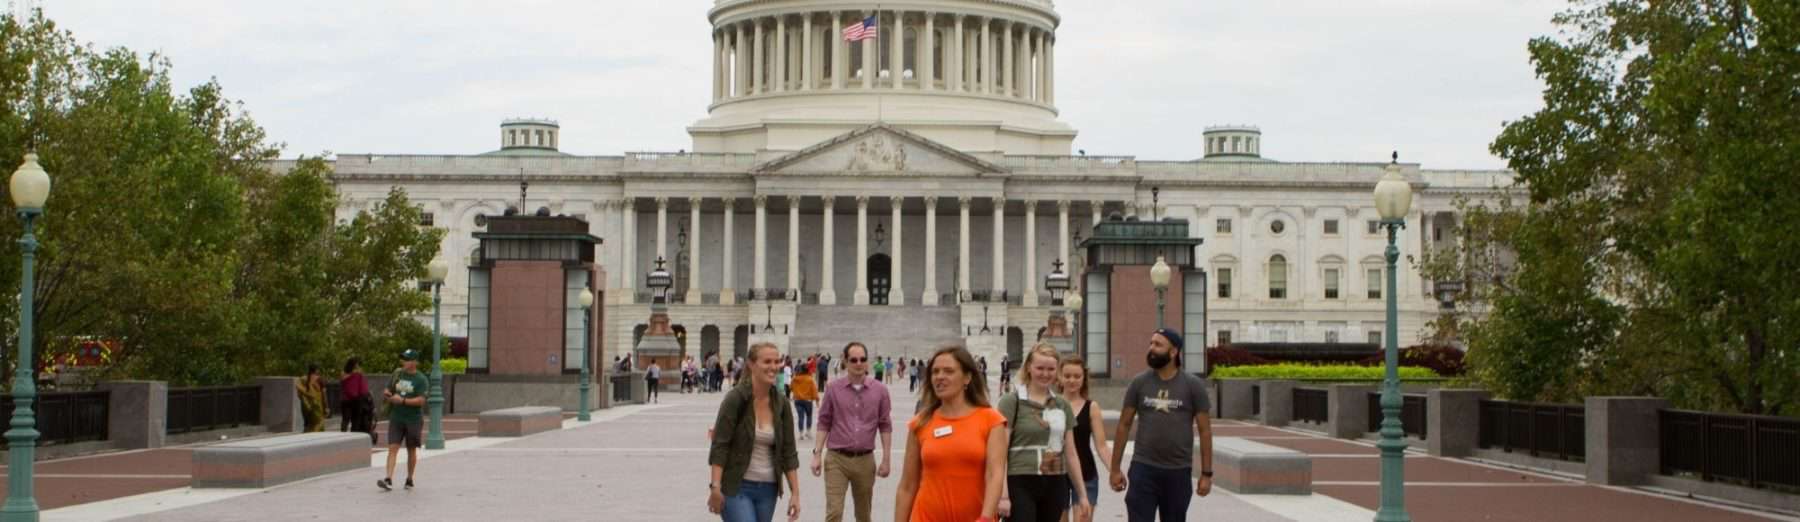 public tours of the us capitol